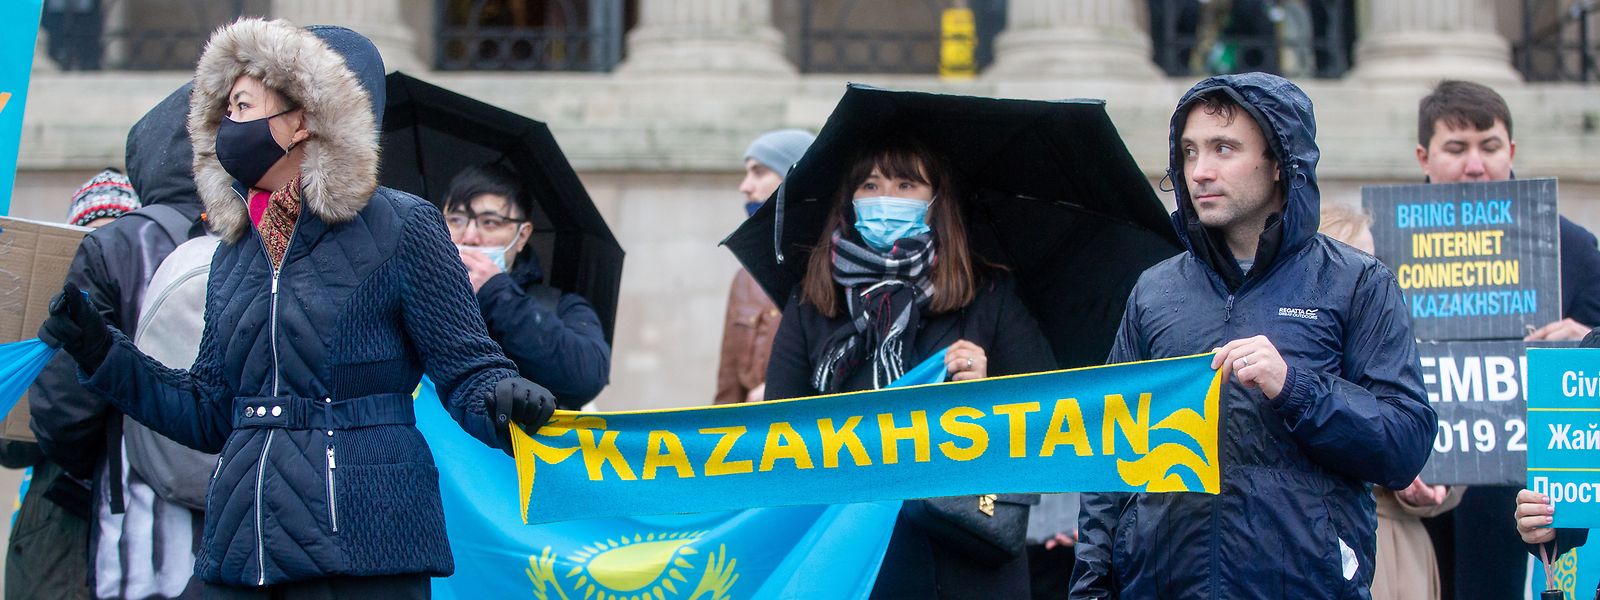 Protestteilnehmer in London nehmen an einer Demonstration auf dem Trafalgar Square teil, um ihre Solidarität mit den Demonstranten in Kasachstan zu zeigen.